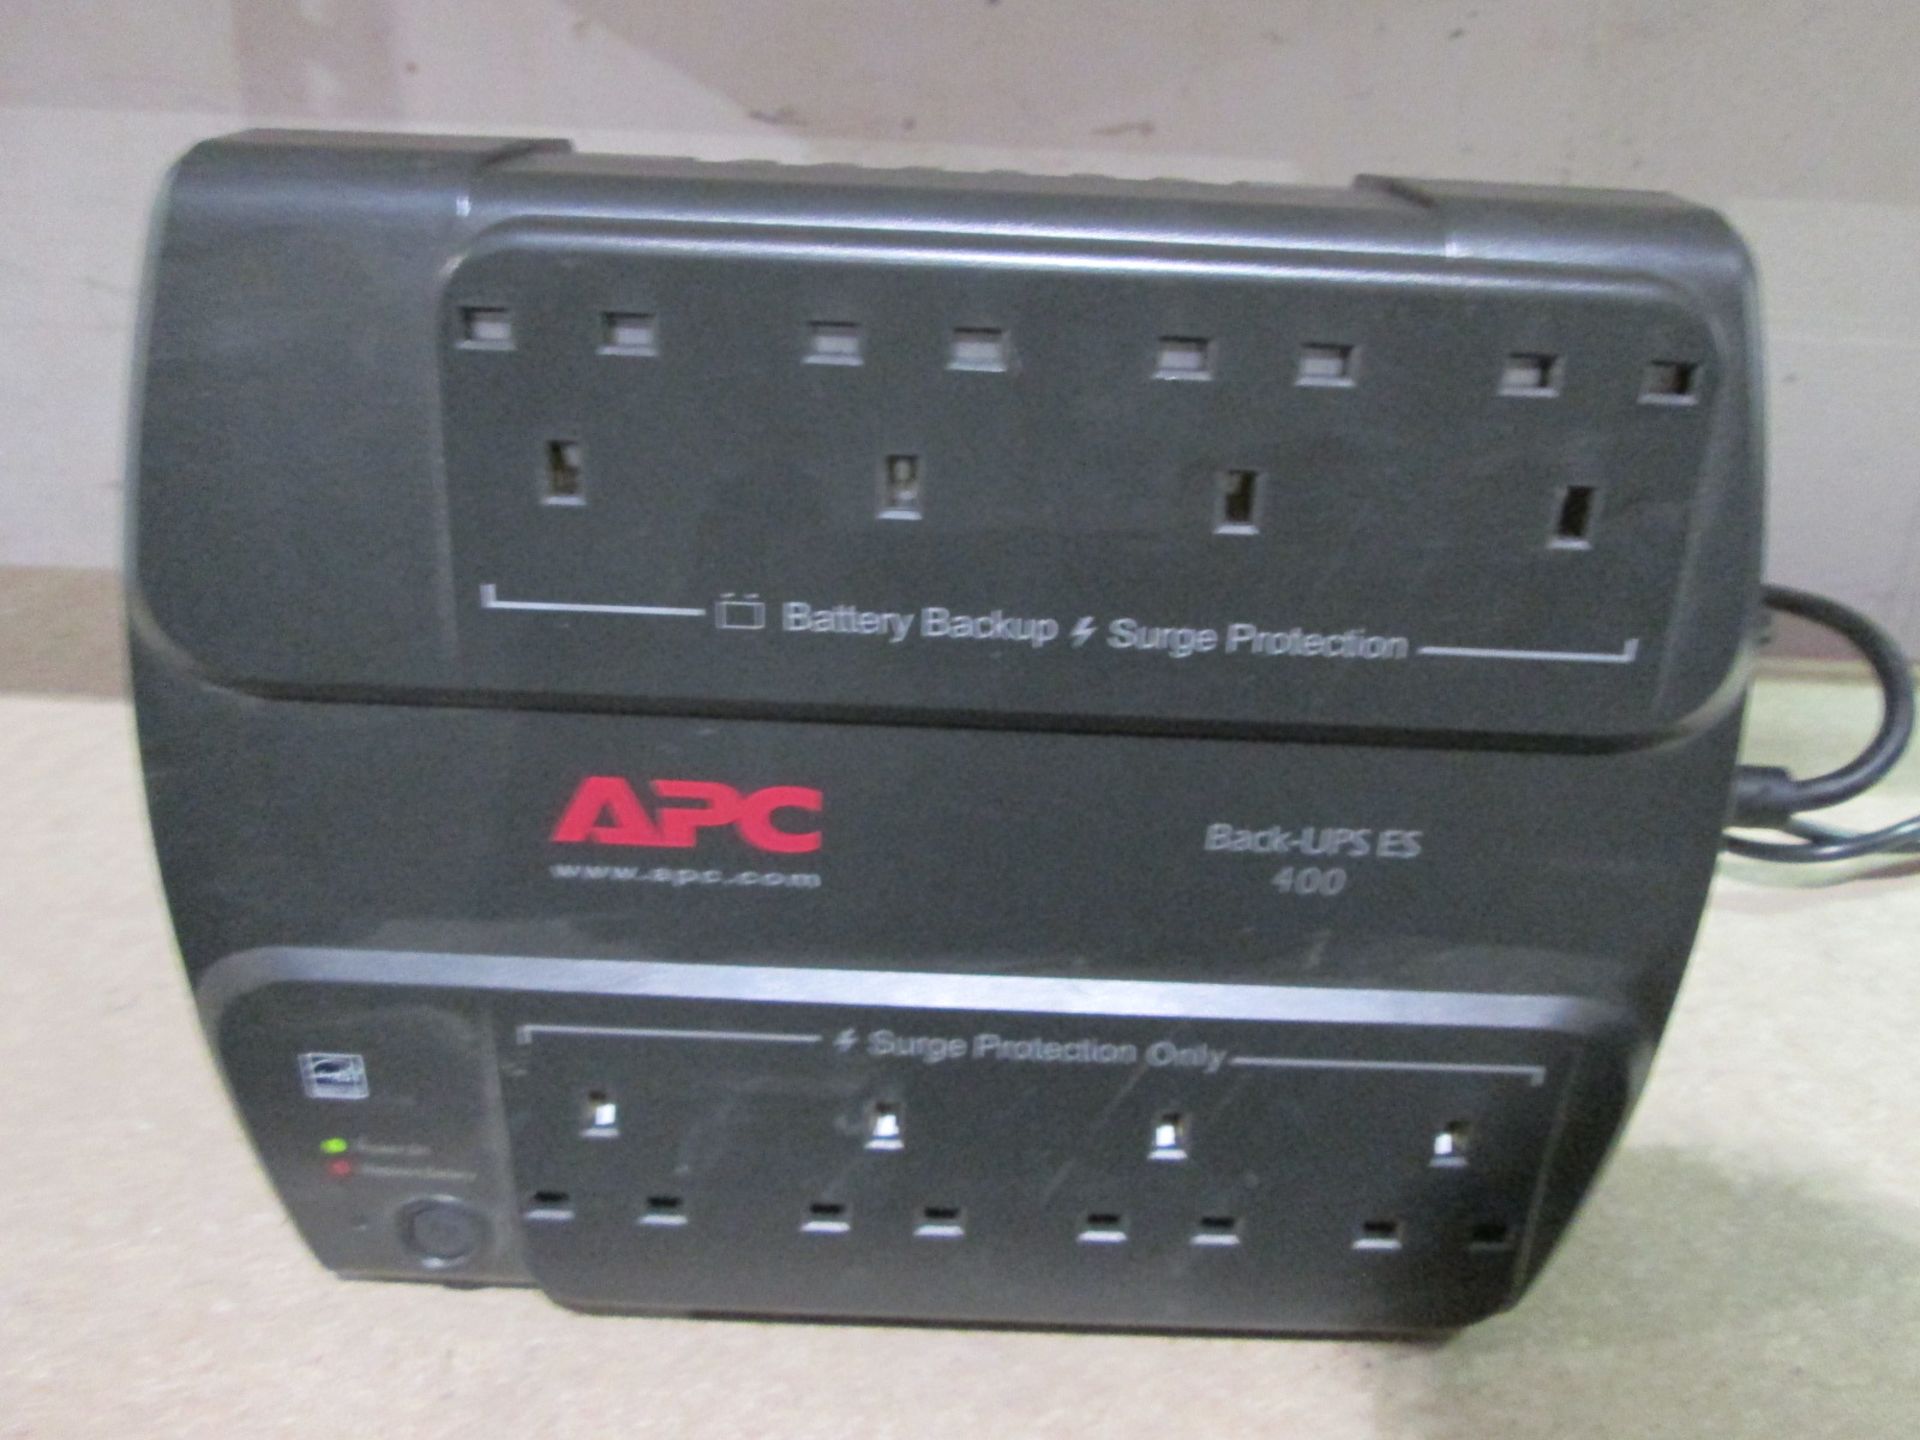 APC Back-UPS ES 400 Battery Back Up, 400V, 240W 8 socket - Image 2 of 4